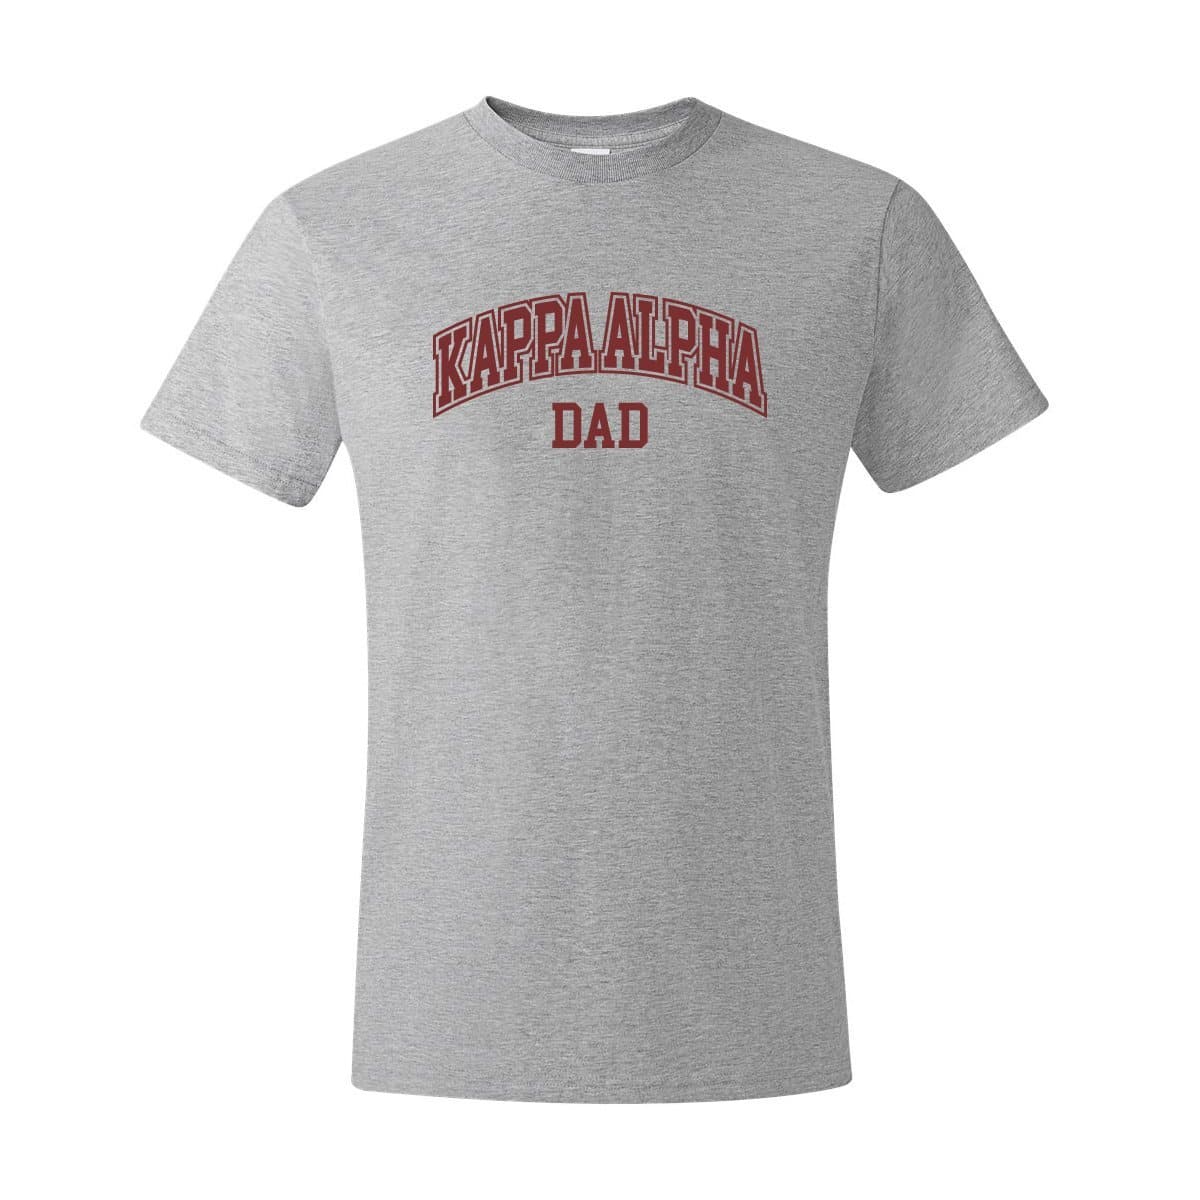 Kappa Alpha Heather Gray Dad Tee | Kappa Alpha Order | Shirts > Short sleeve t-shirts